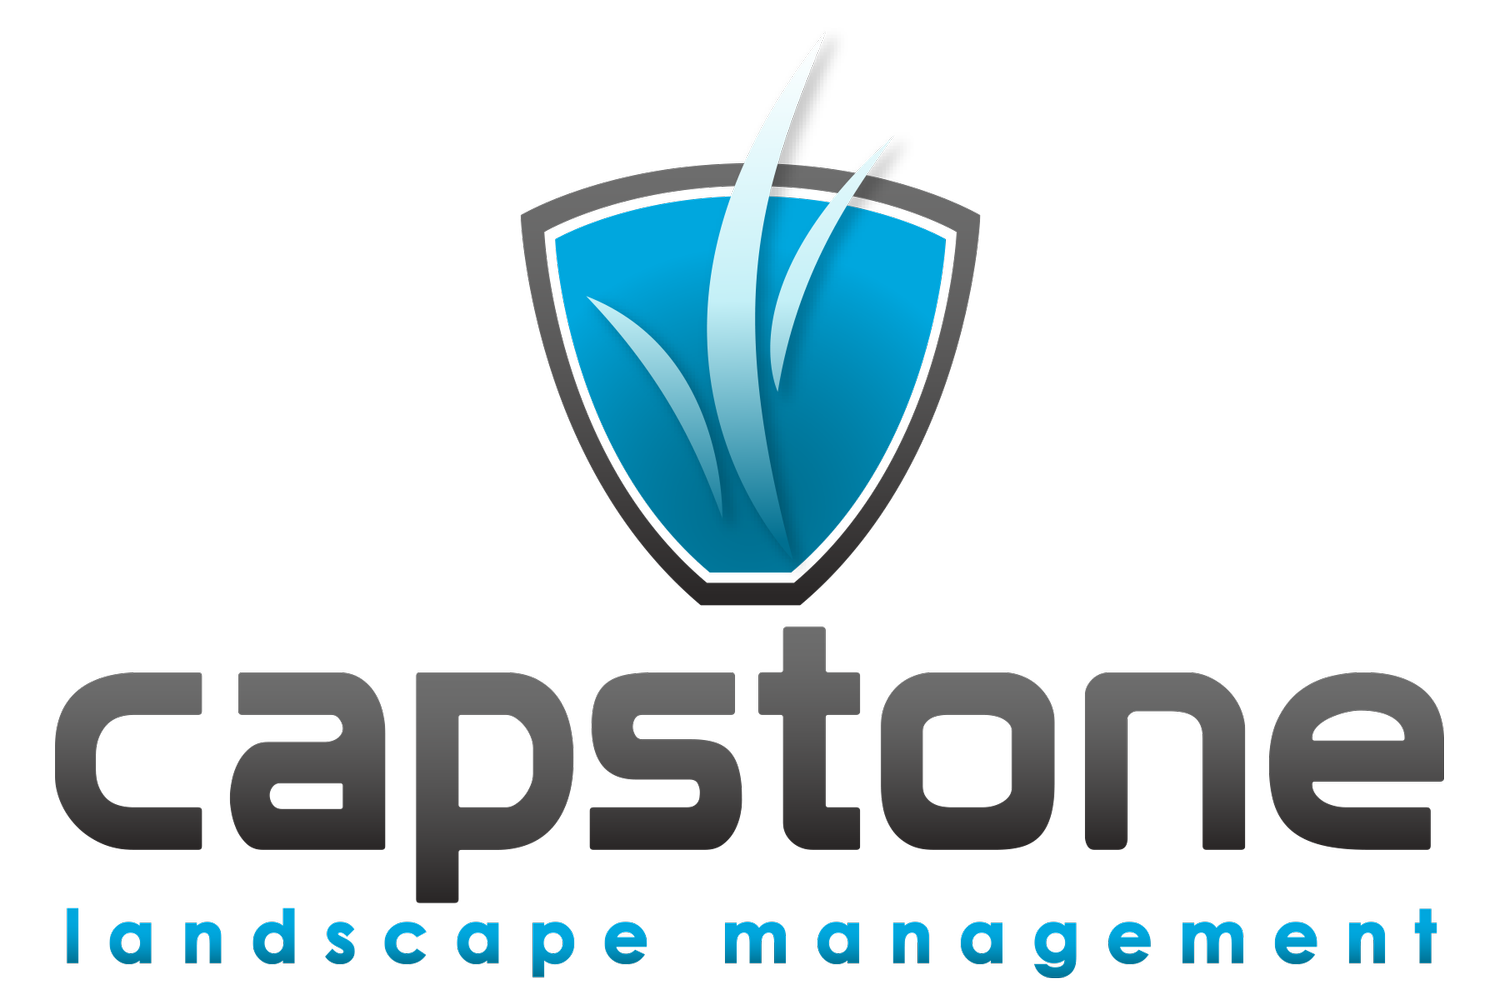 Capstone Landscape Management